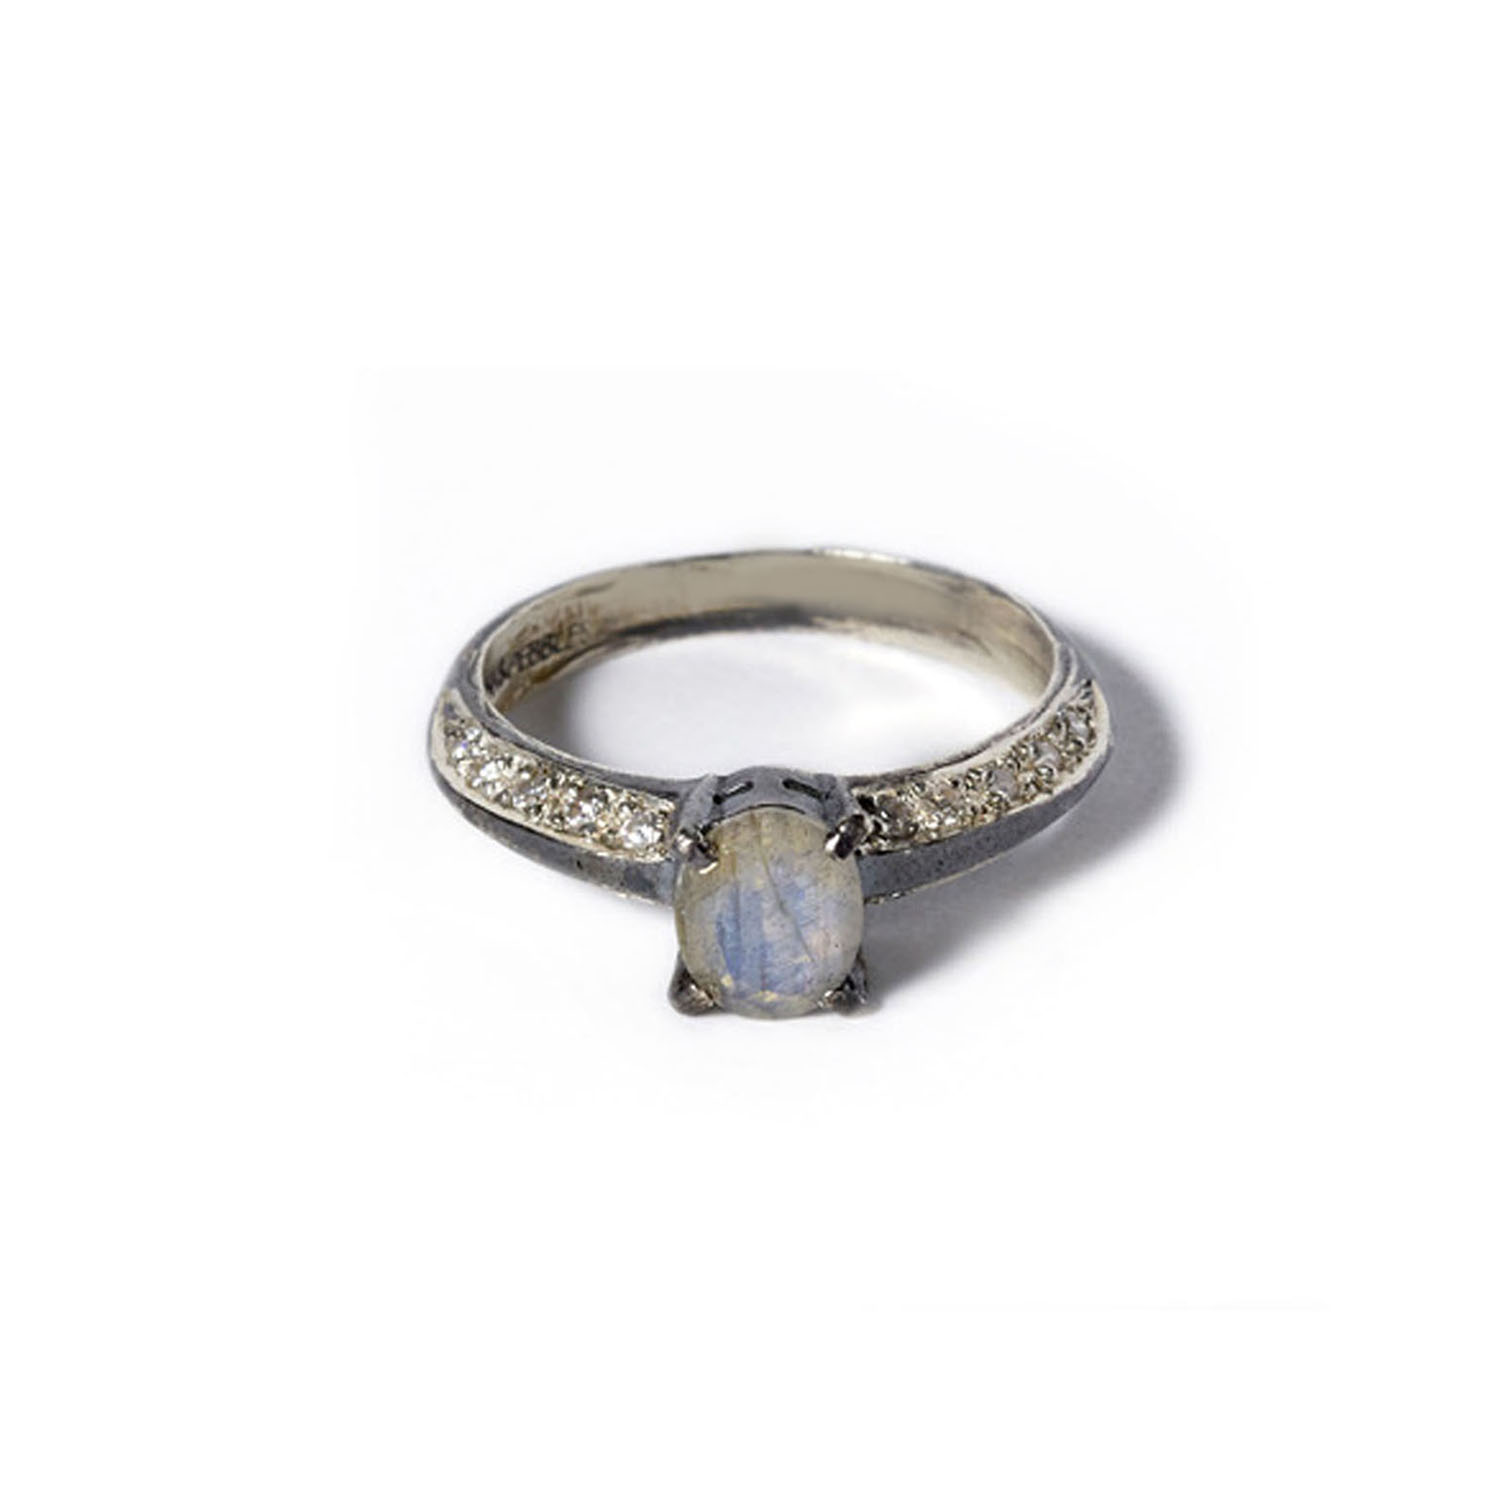 Anastasia ring